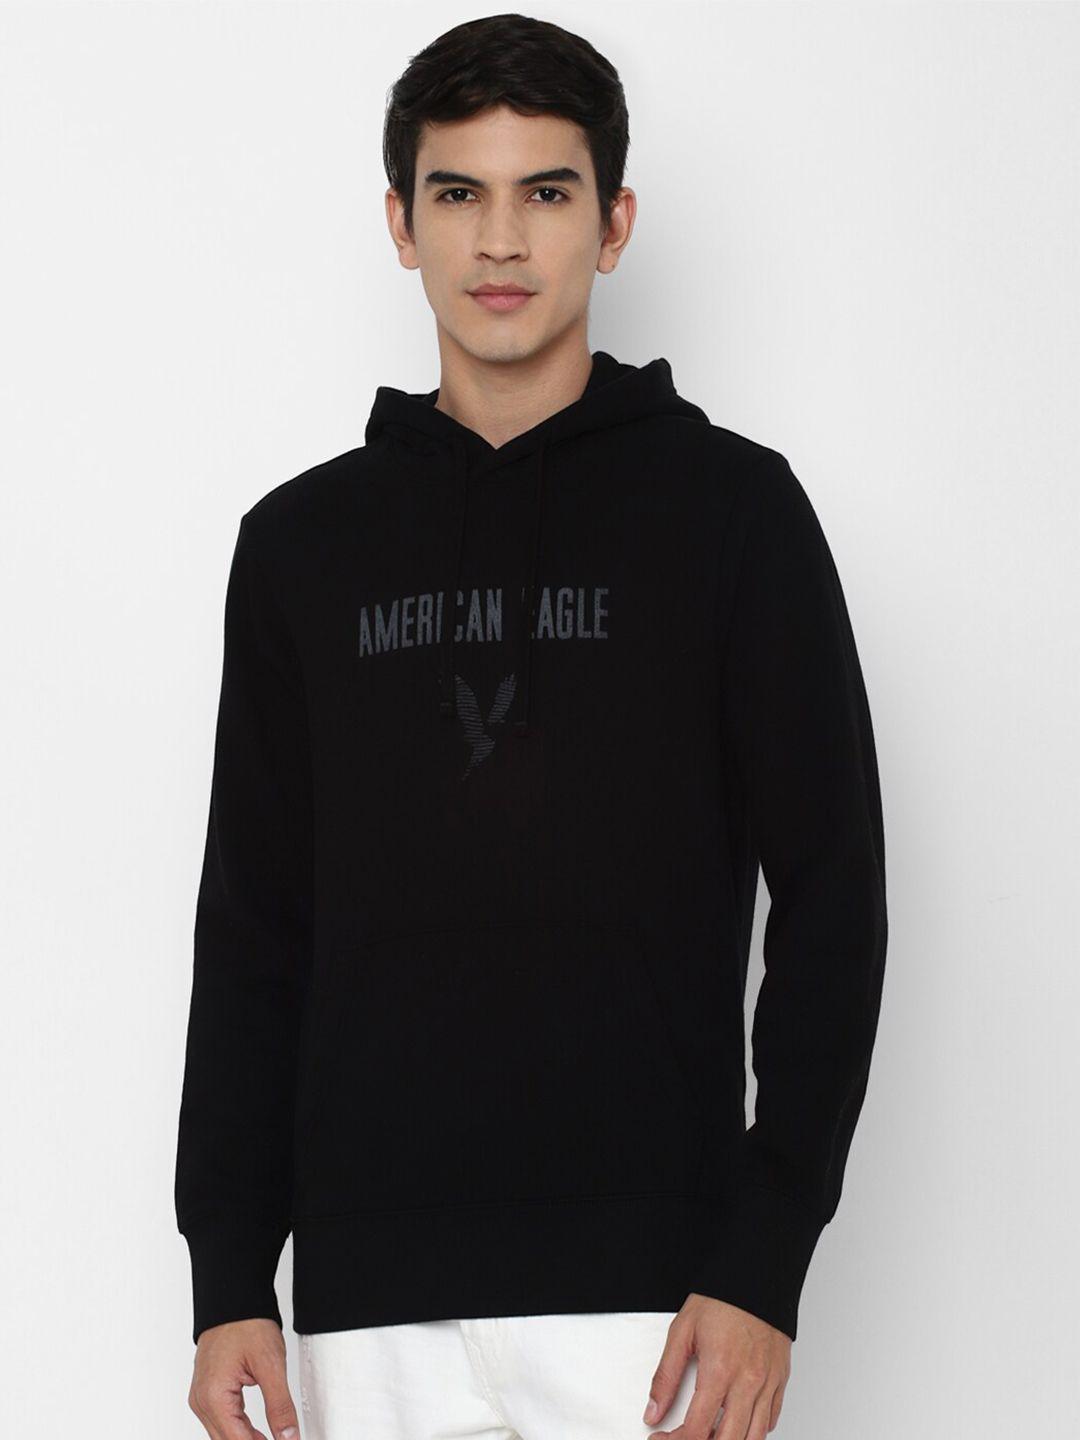 american eagle outfitters men black printed hooded sweatshirt